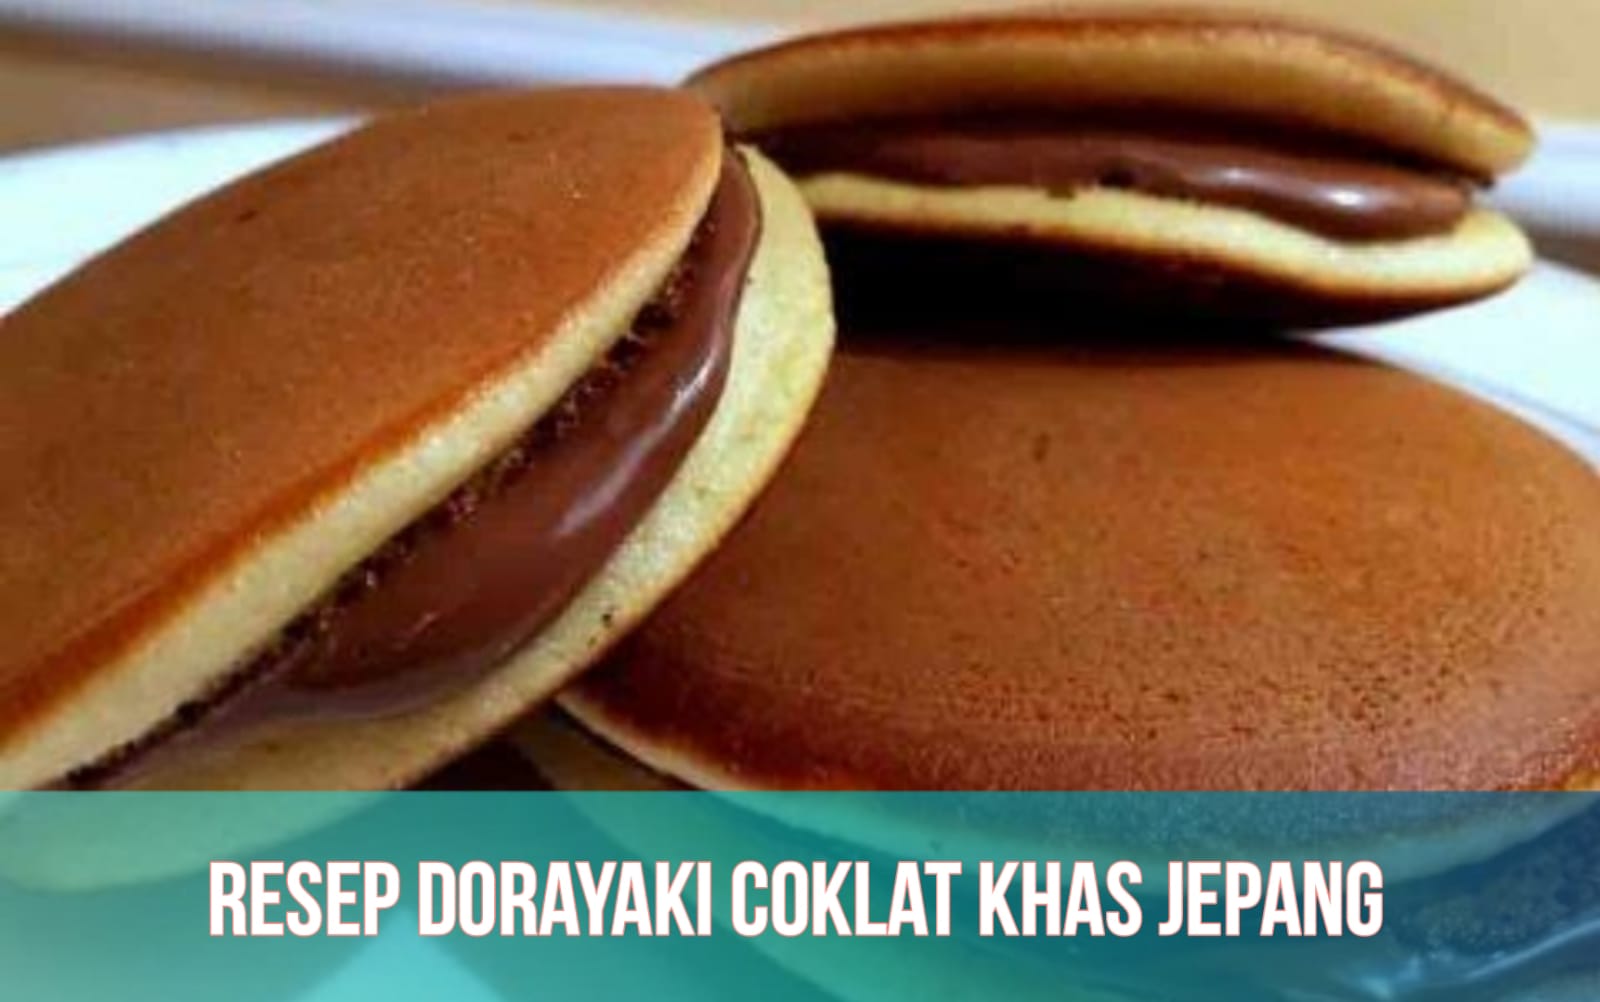 Resep Dorayaki Coklat, Kudapan Manis Khas Jepang yang Lezat dan Mudah Dibuat